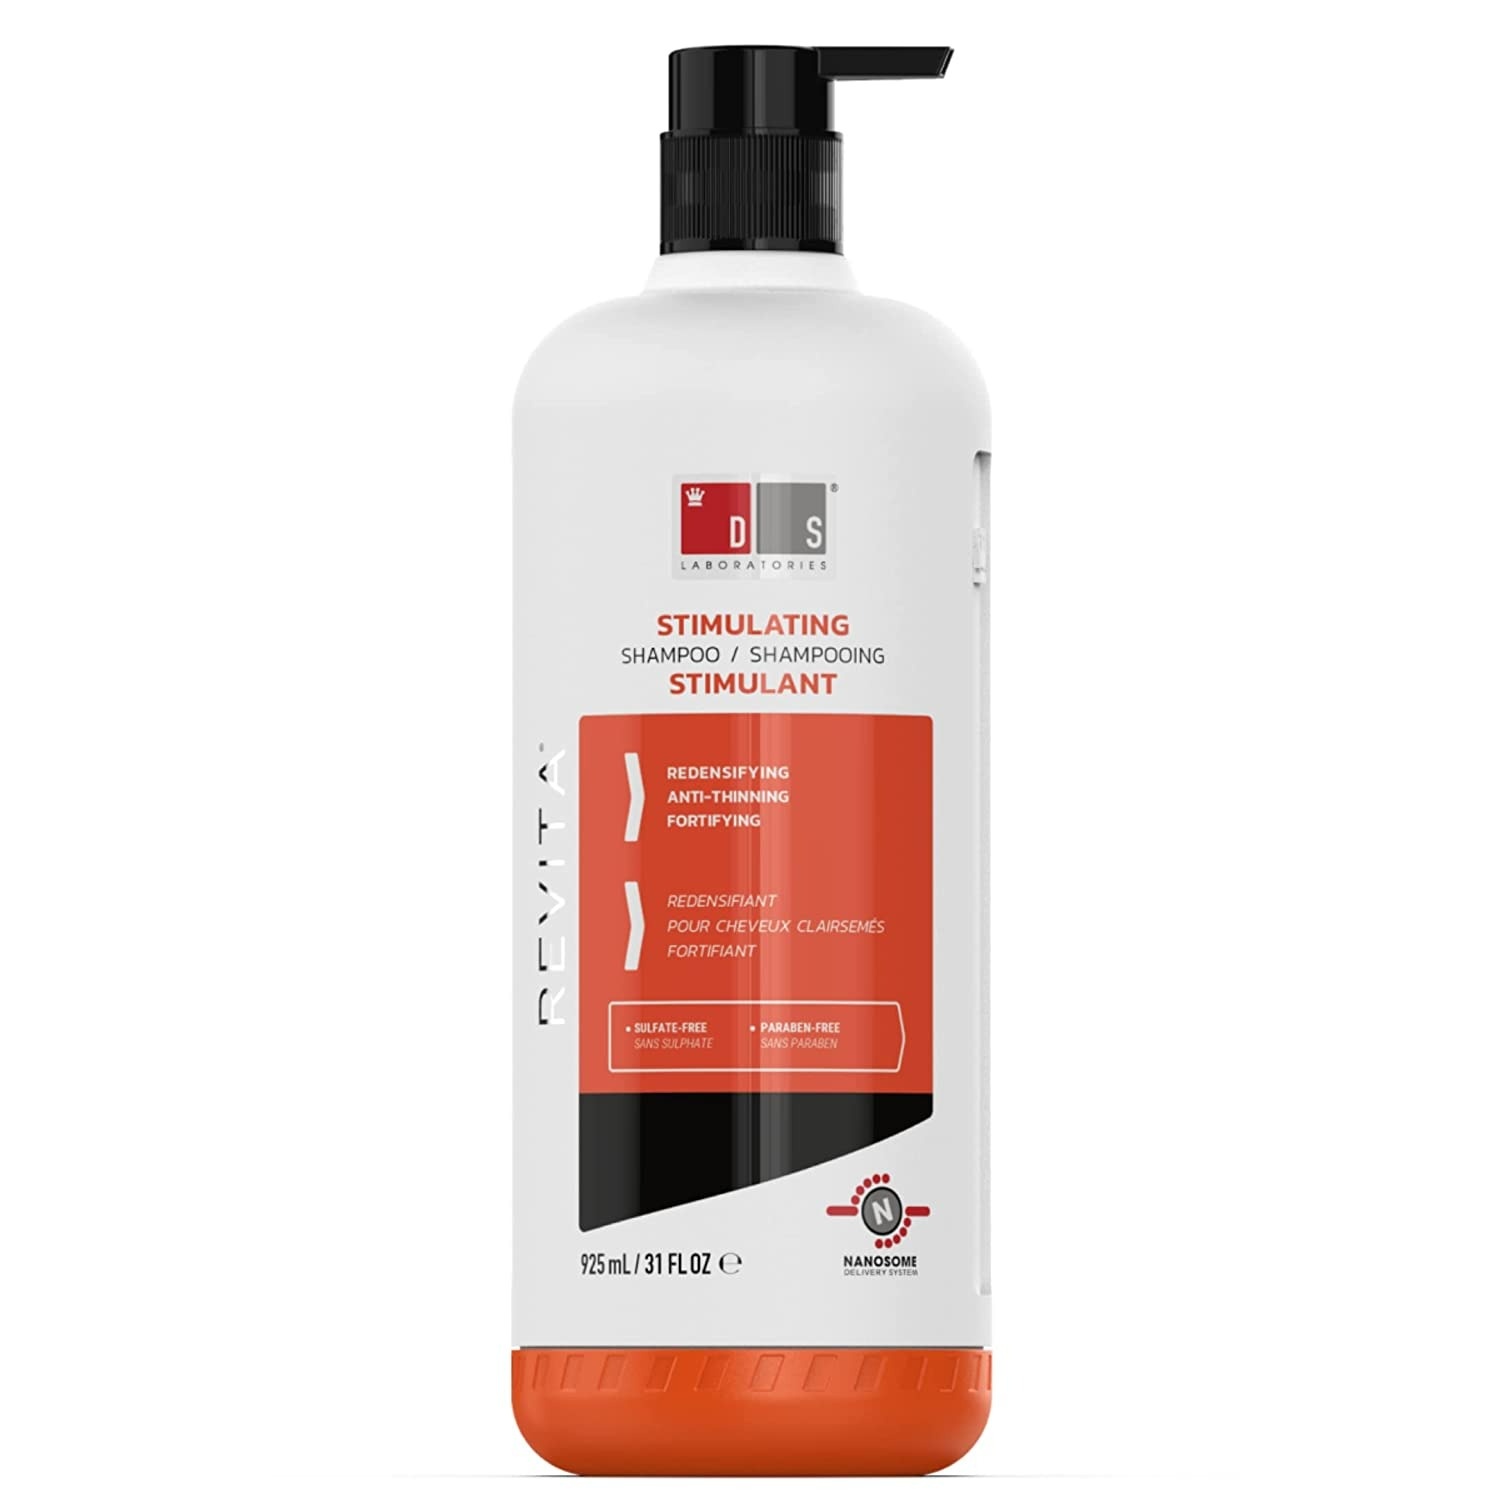 Revita Shampoo For Thinning Hair - Volumizing and Thickening Shampoo - 925 Ml